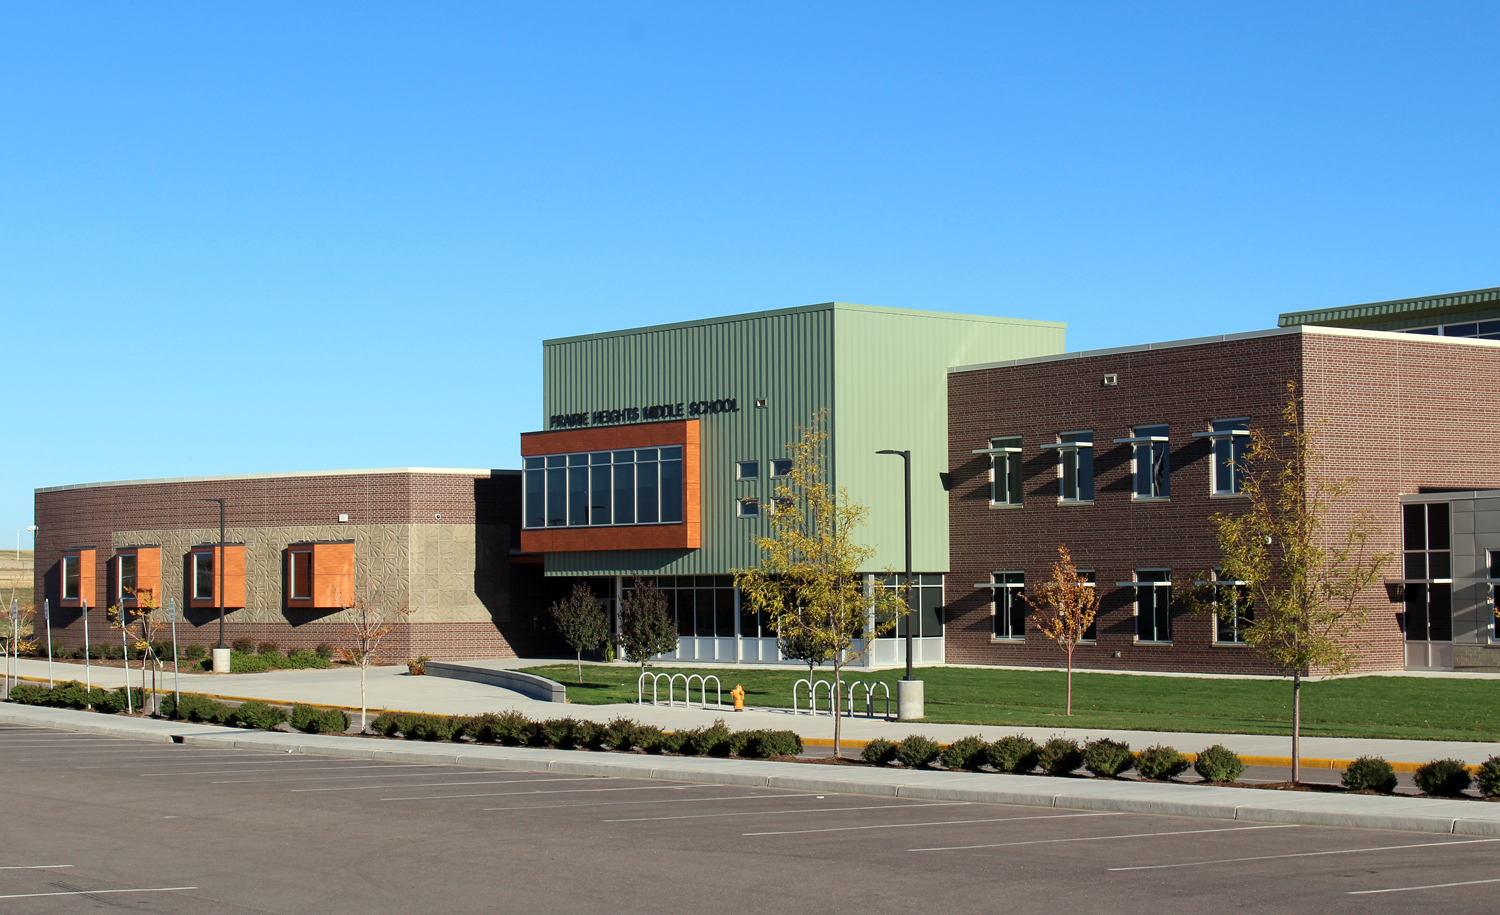 PHOTO: Prairie Heights Middle School in Evans, Colorado is seen here.